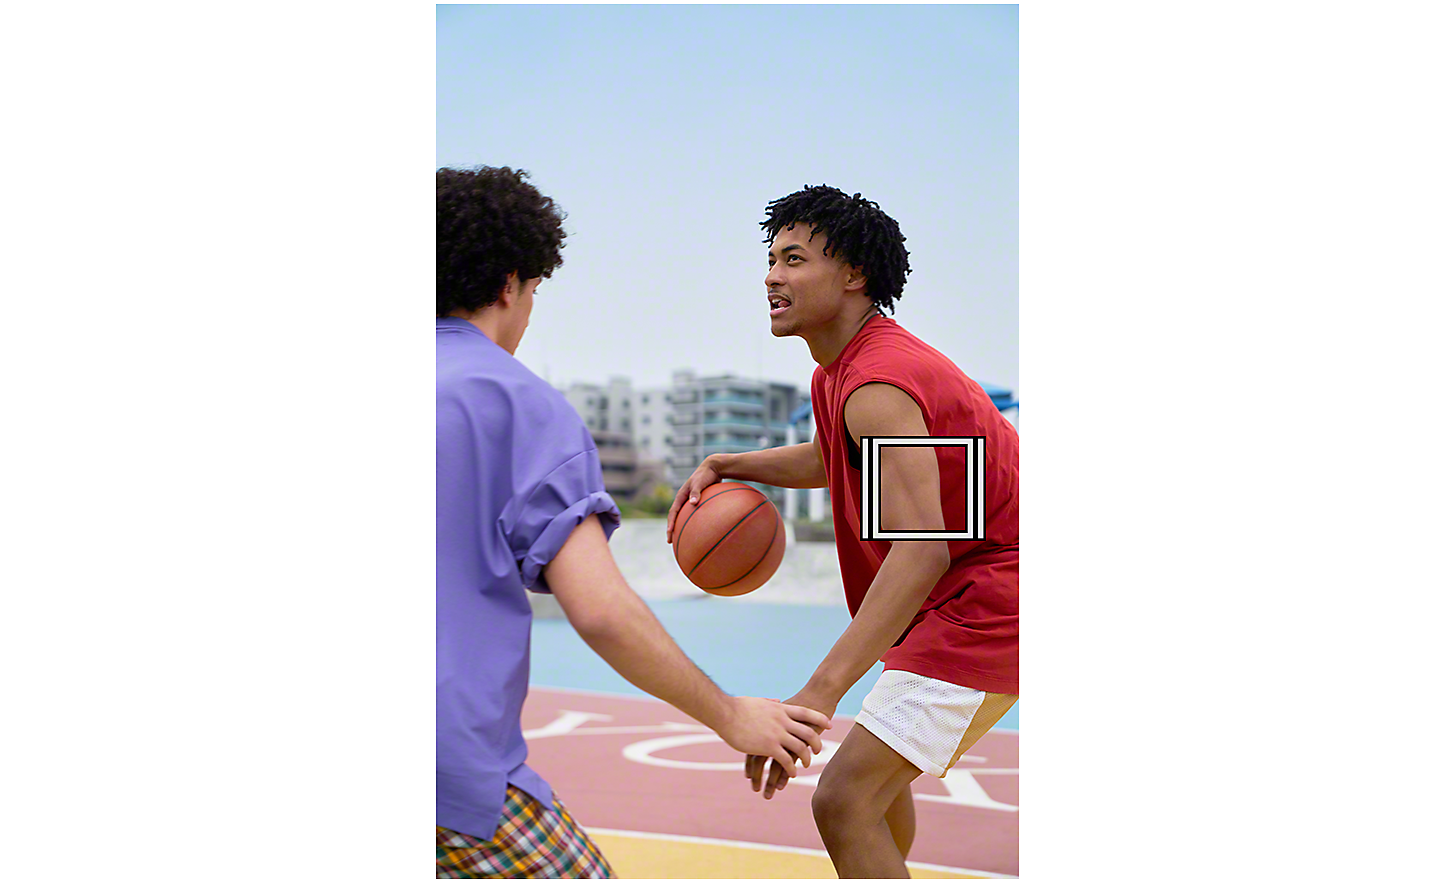 Zwei Männer spielen Basketball im Freien, Objektverfolgung wird durch ein weißes Quadrat dargestellt